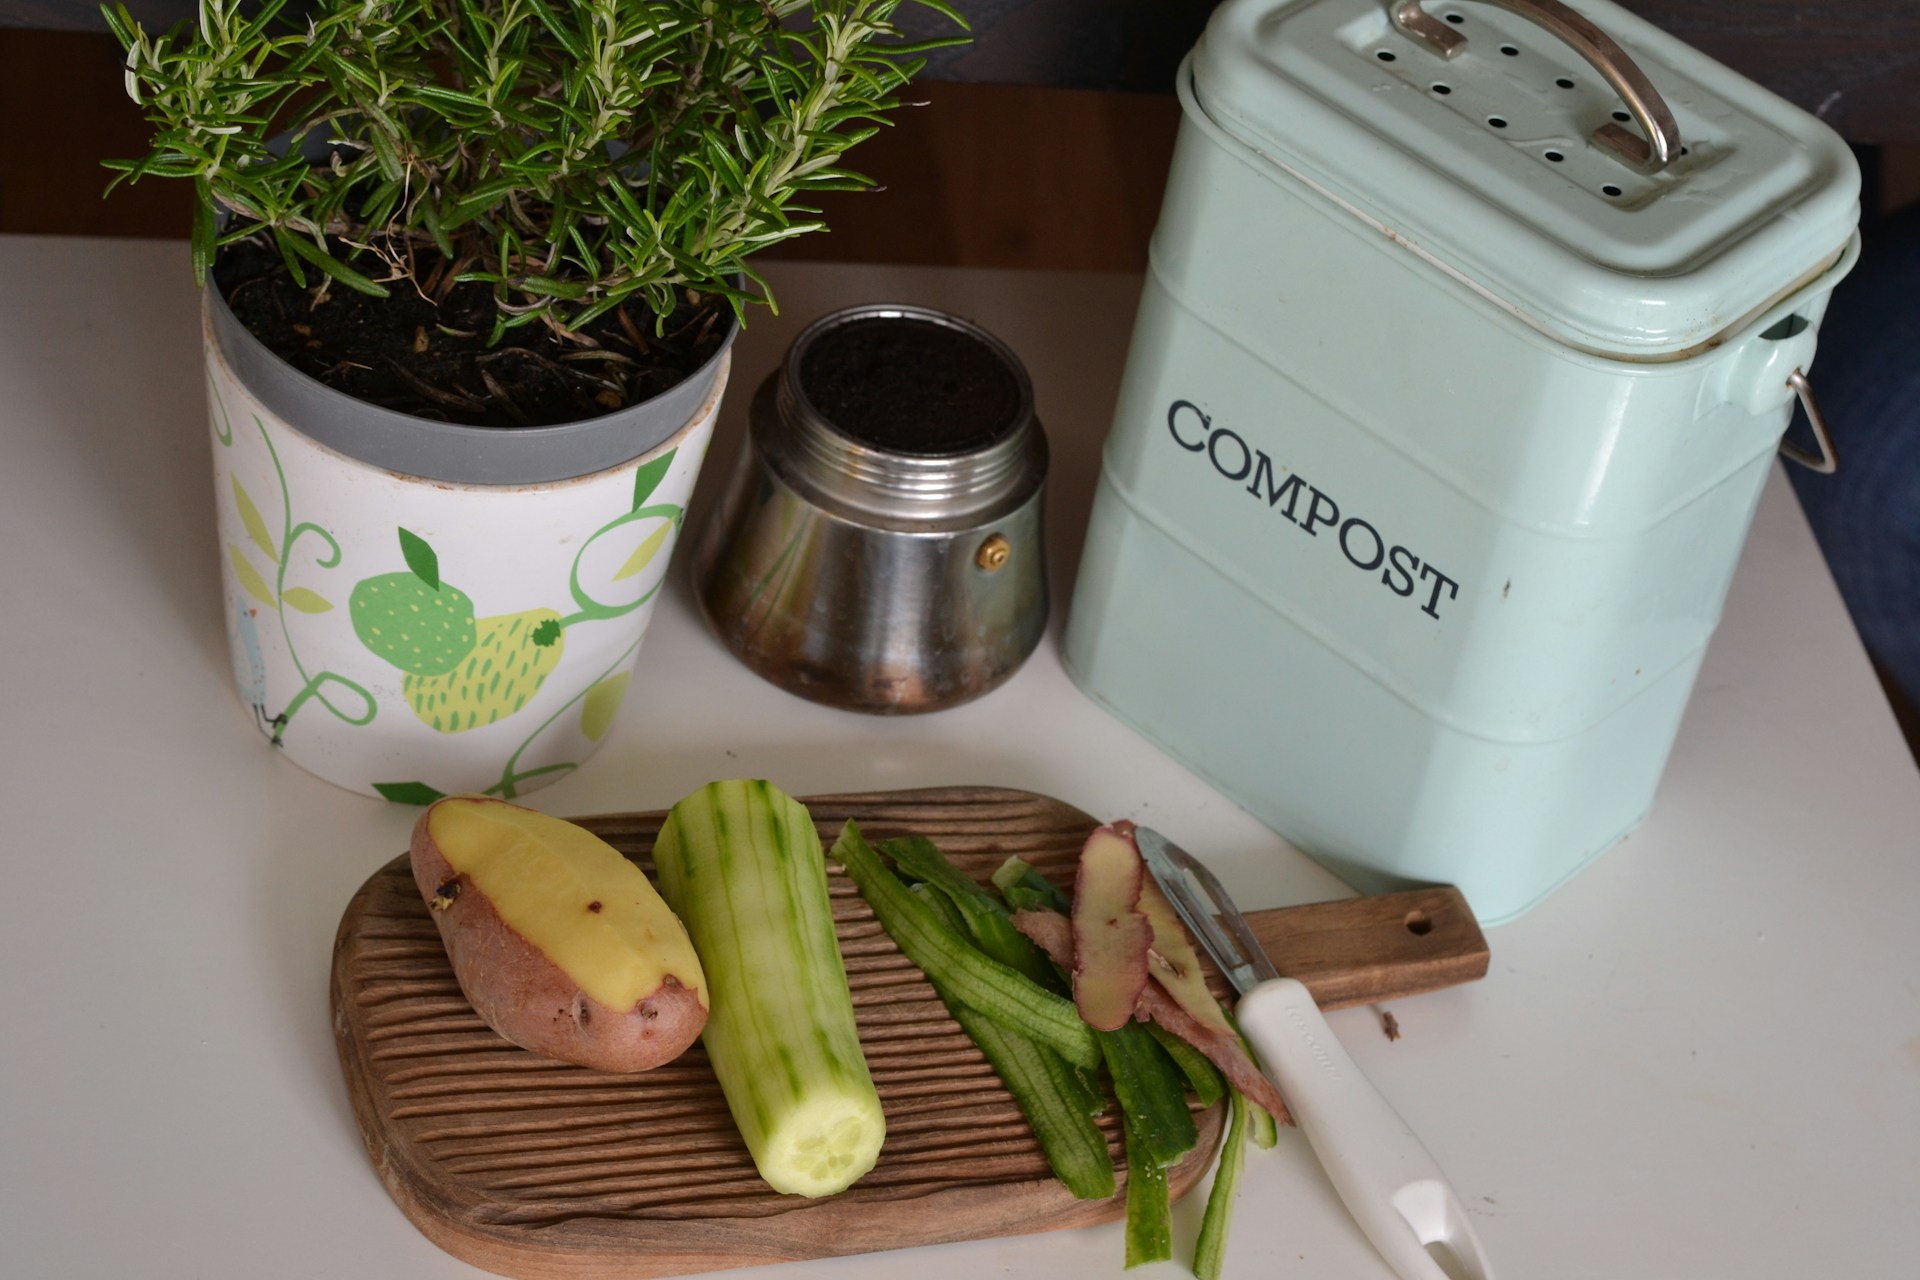 Τα υλικά που μπορείς να χρησιμοποιήσεις για το compost που θα θρέψει τα φυτά σου